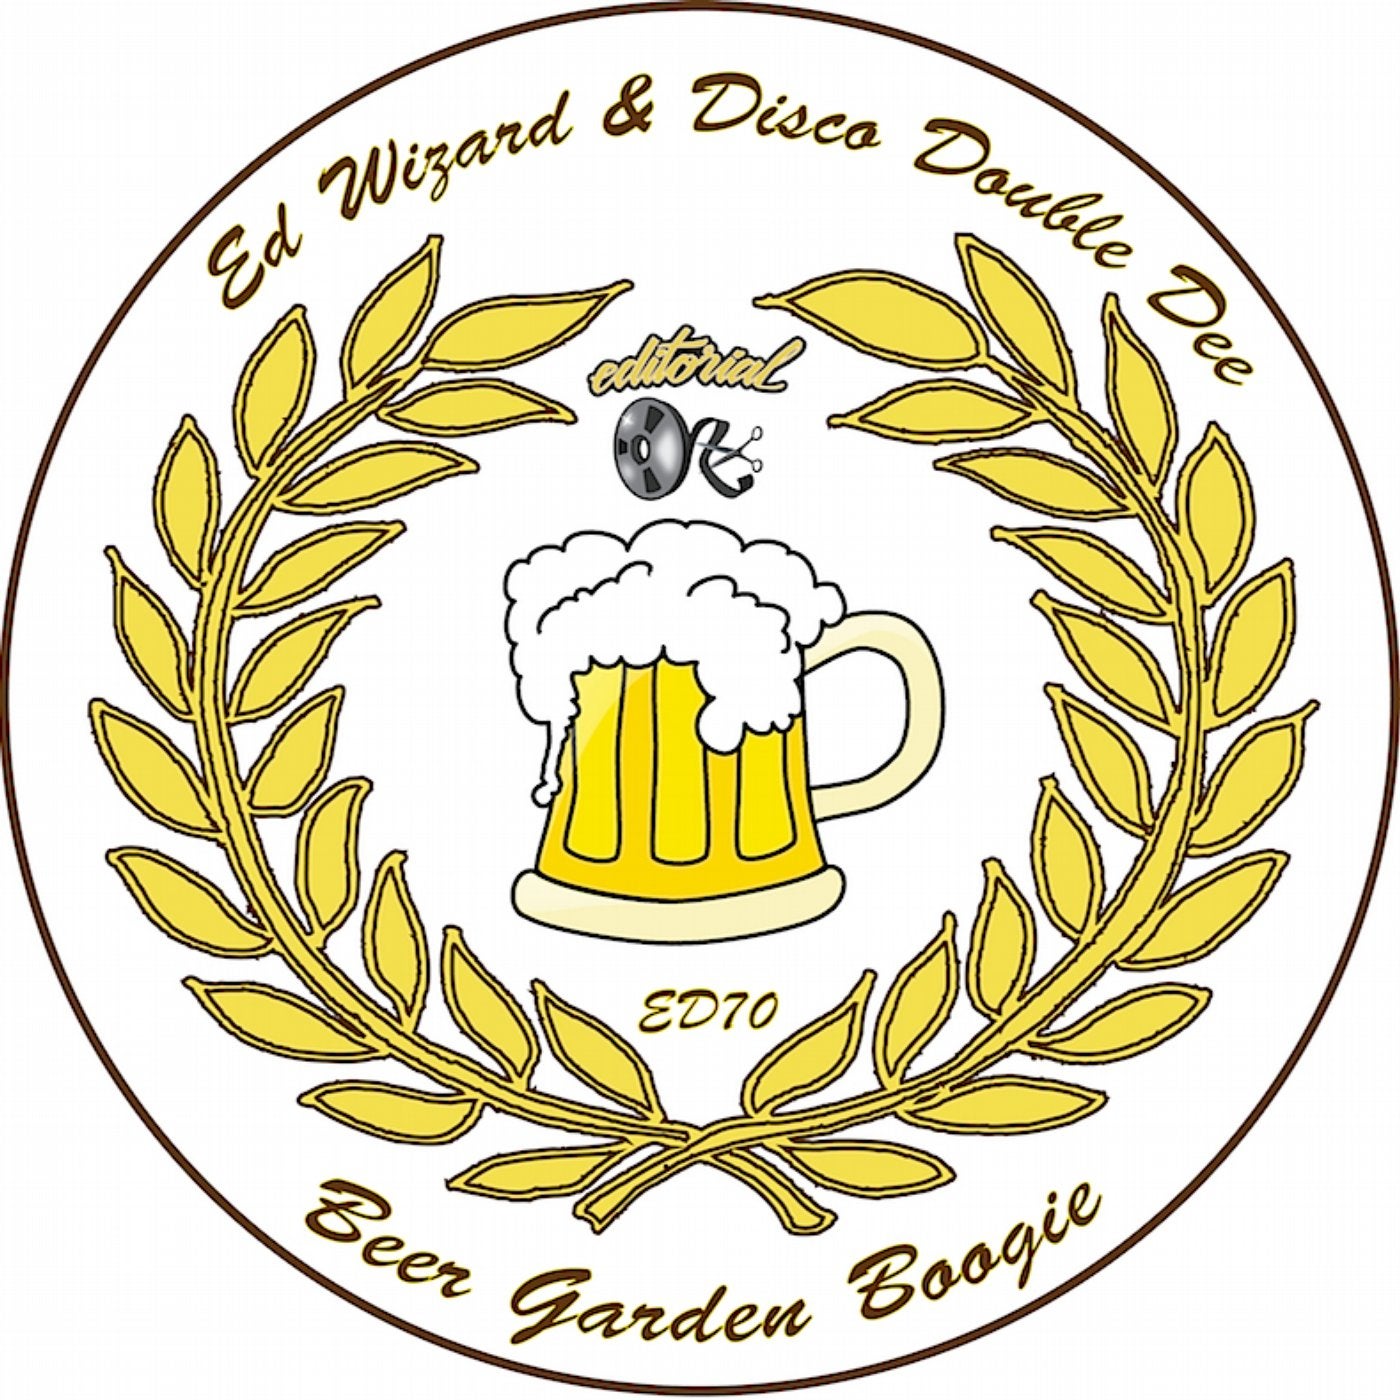 Beer Garden Boogie